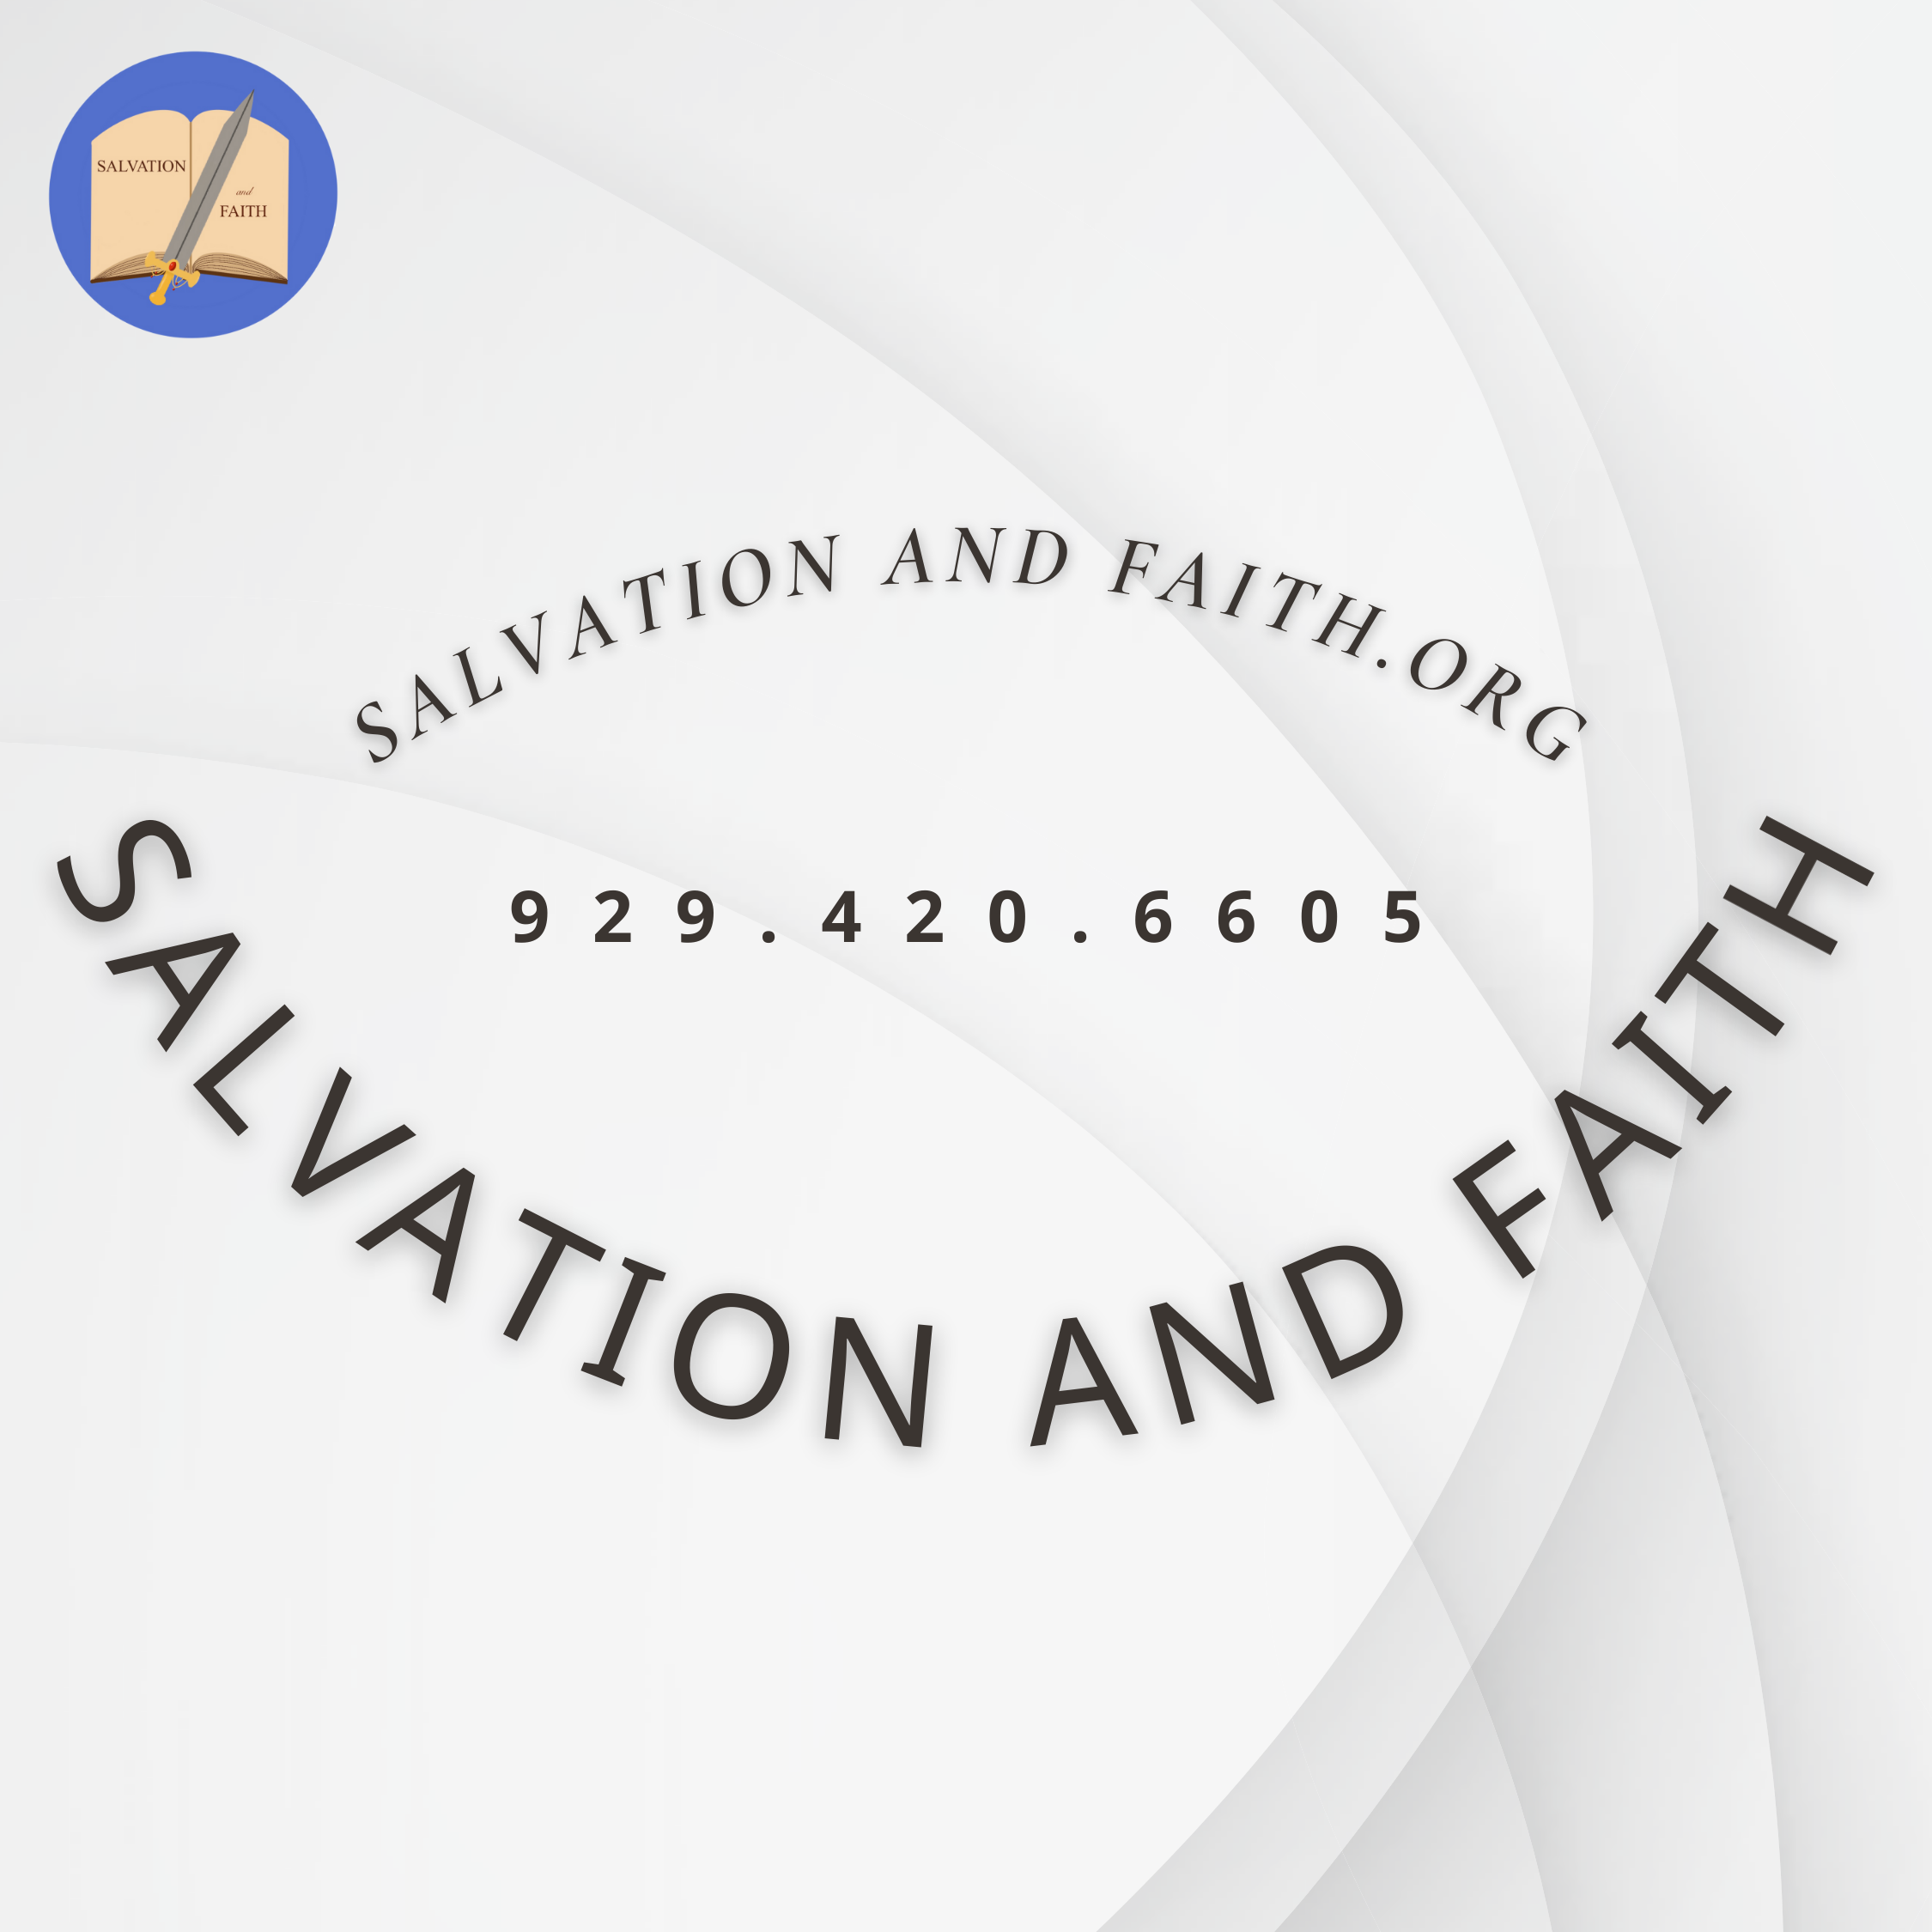 Salvation and Faith